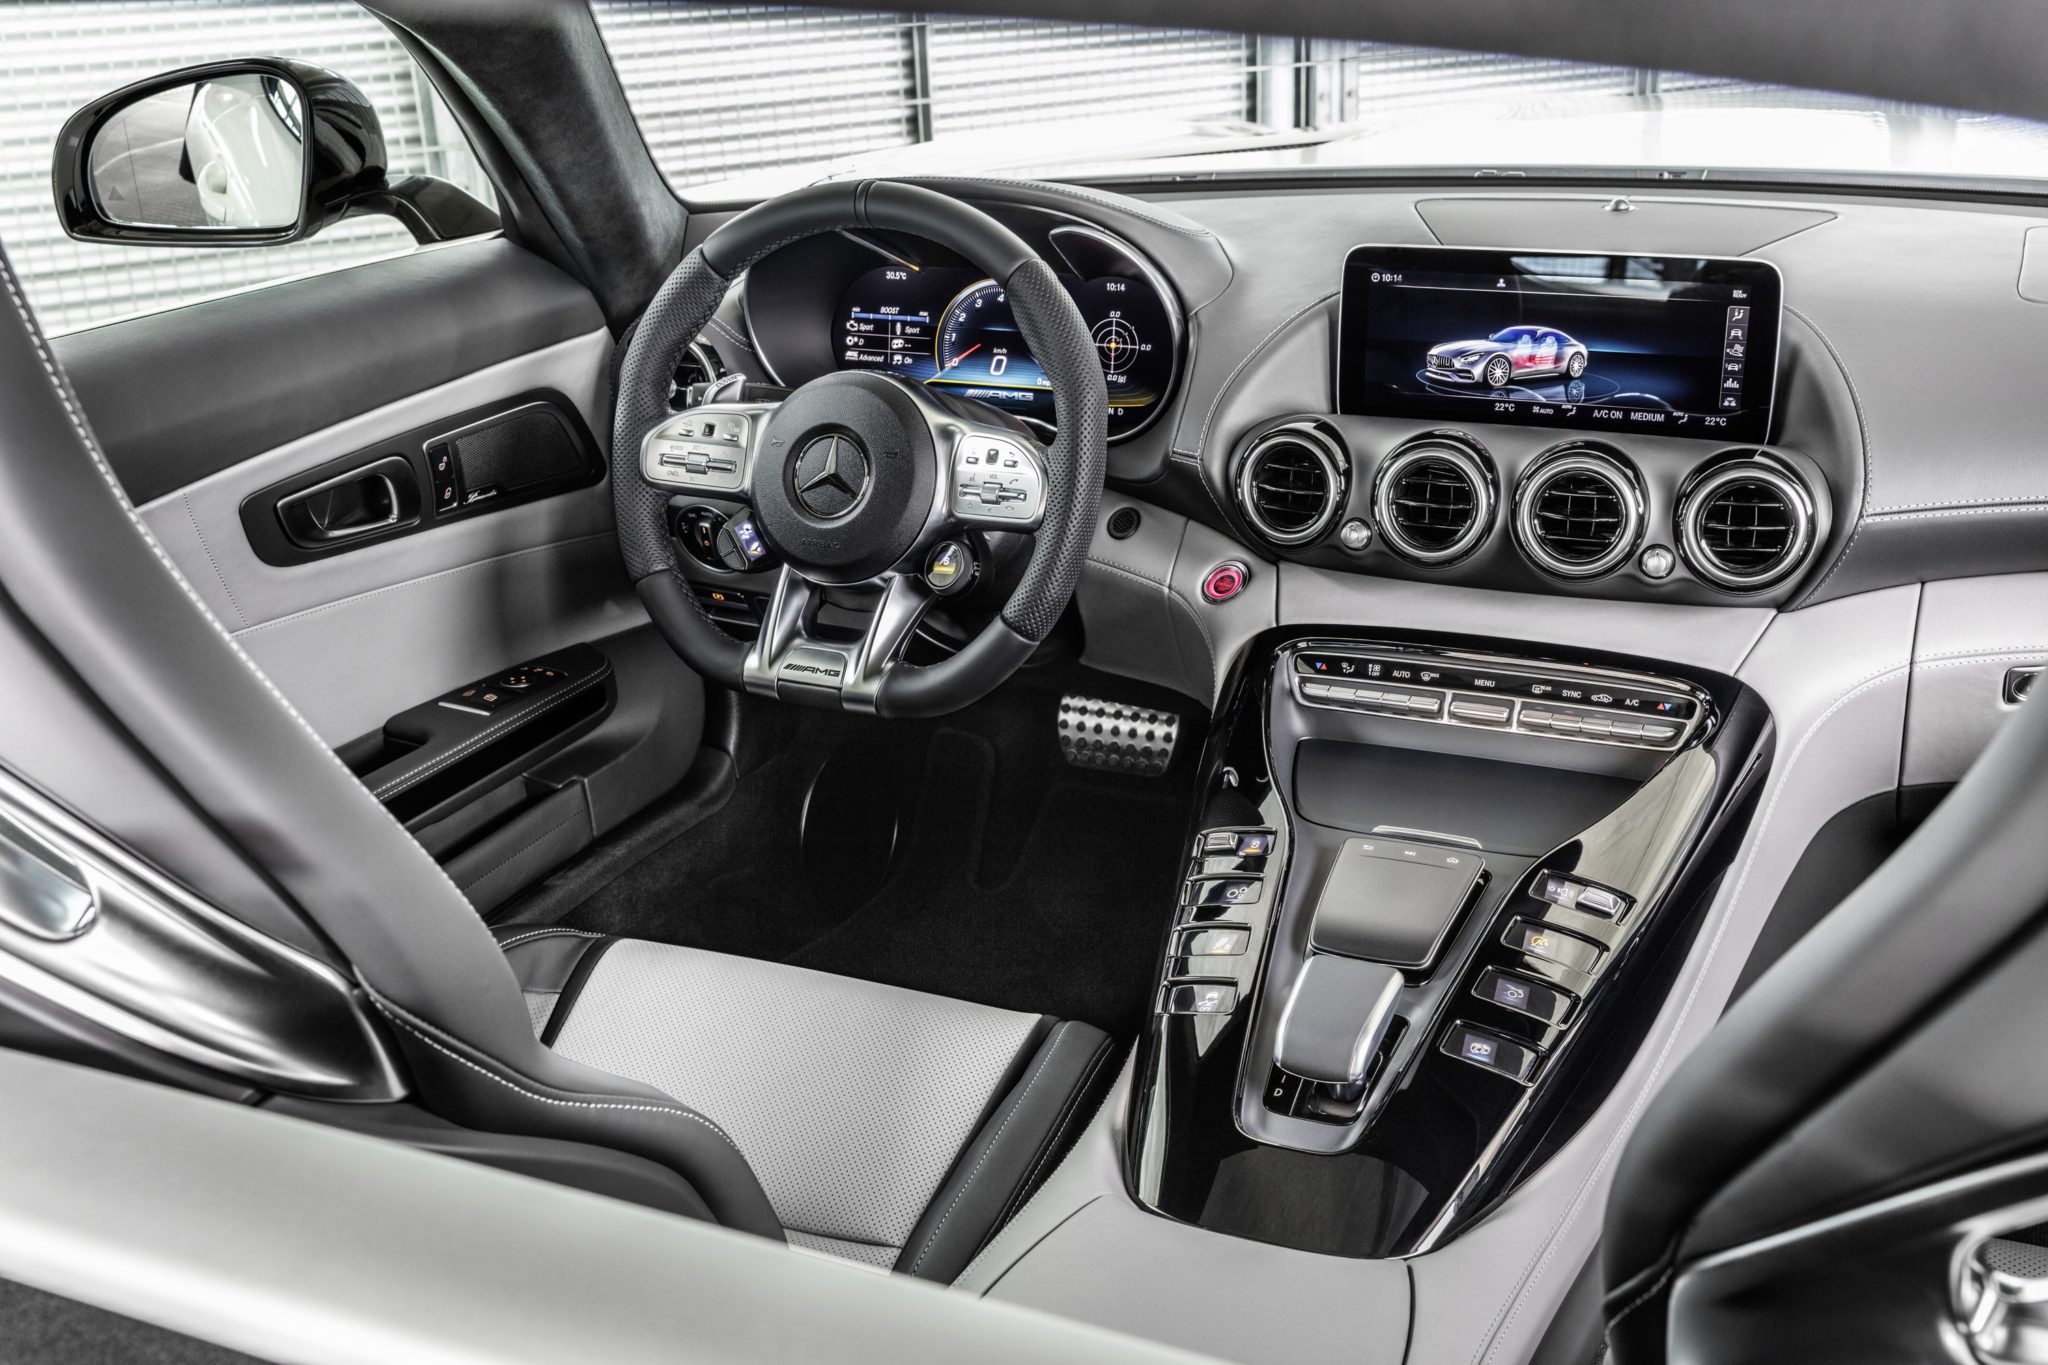 Nuova Mercedes-AMG GT prezzi UK